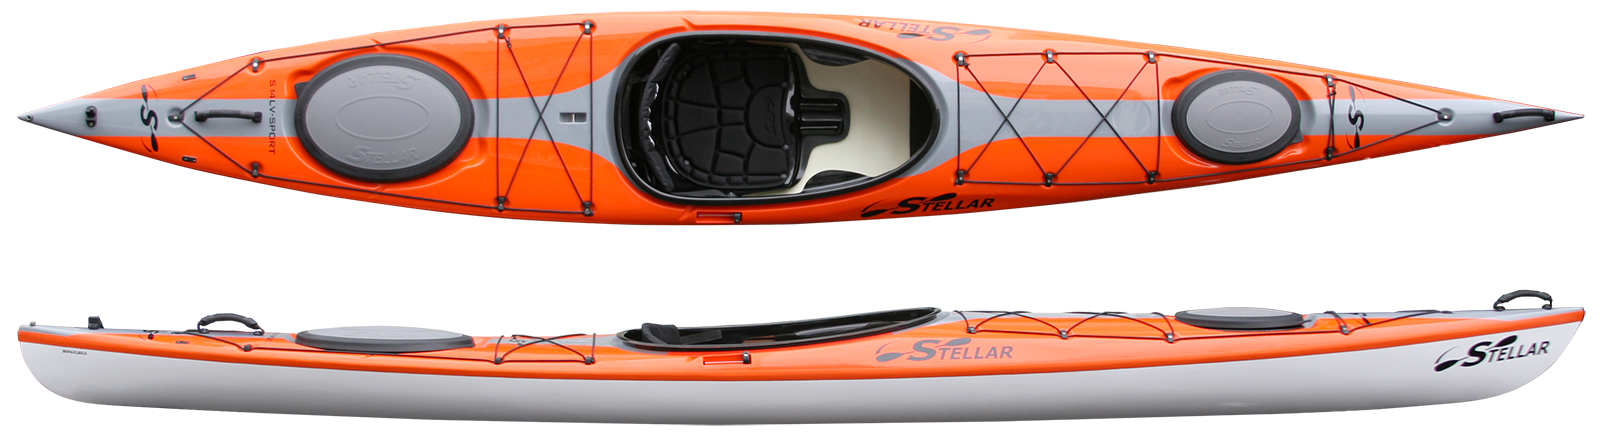 stellar.kayaks.s14LV.top.side